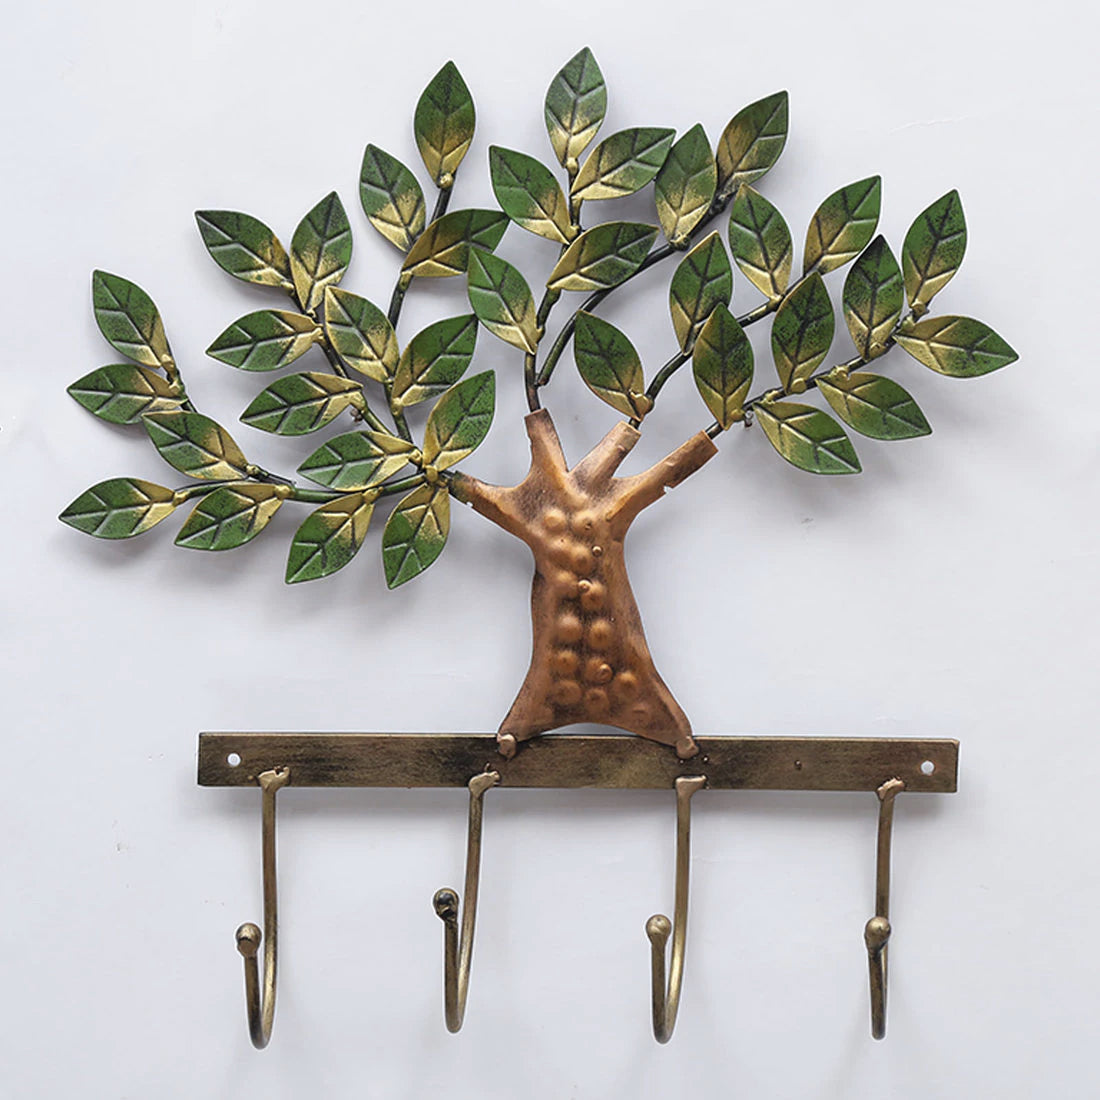 Buy Green Tree Metal Wall Hook online at